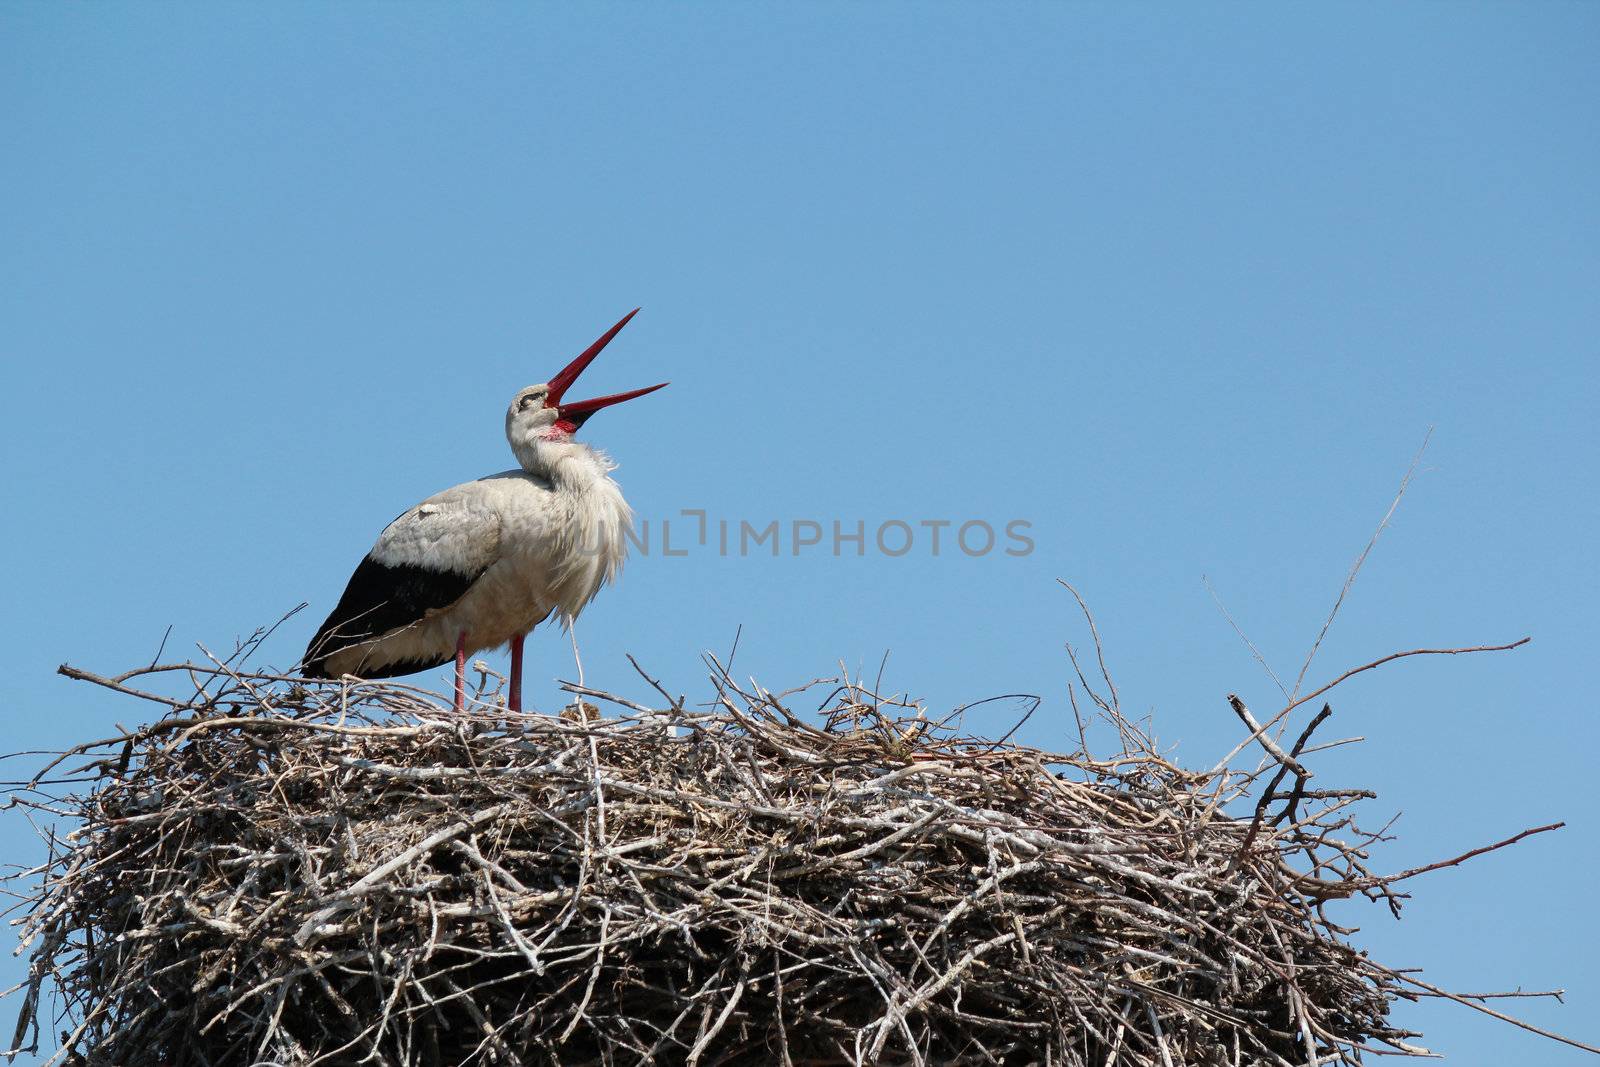 white stork standing in nest